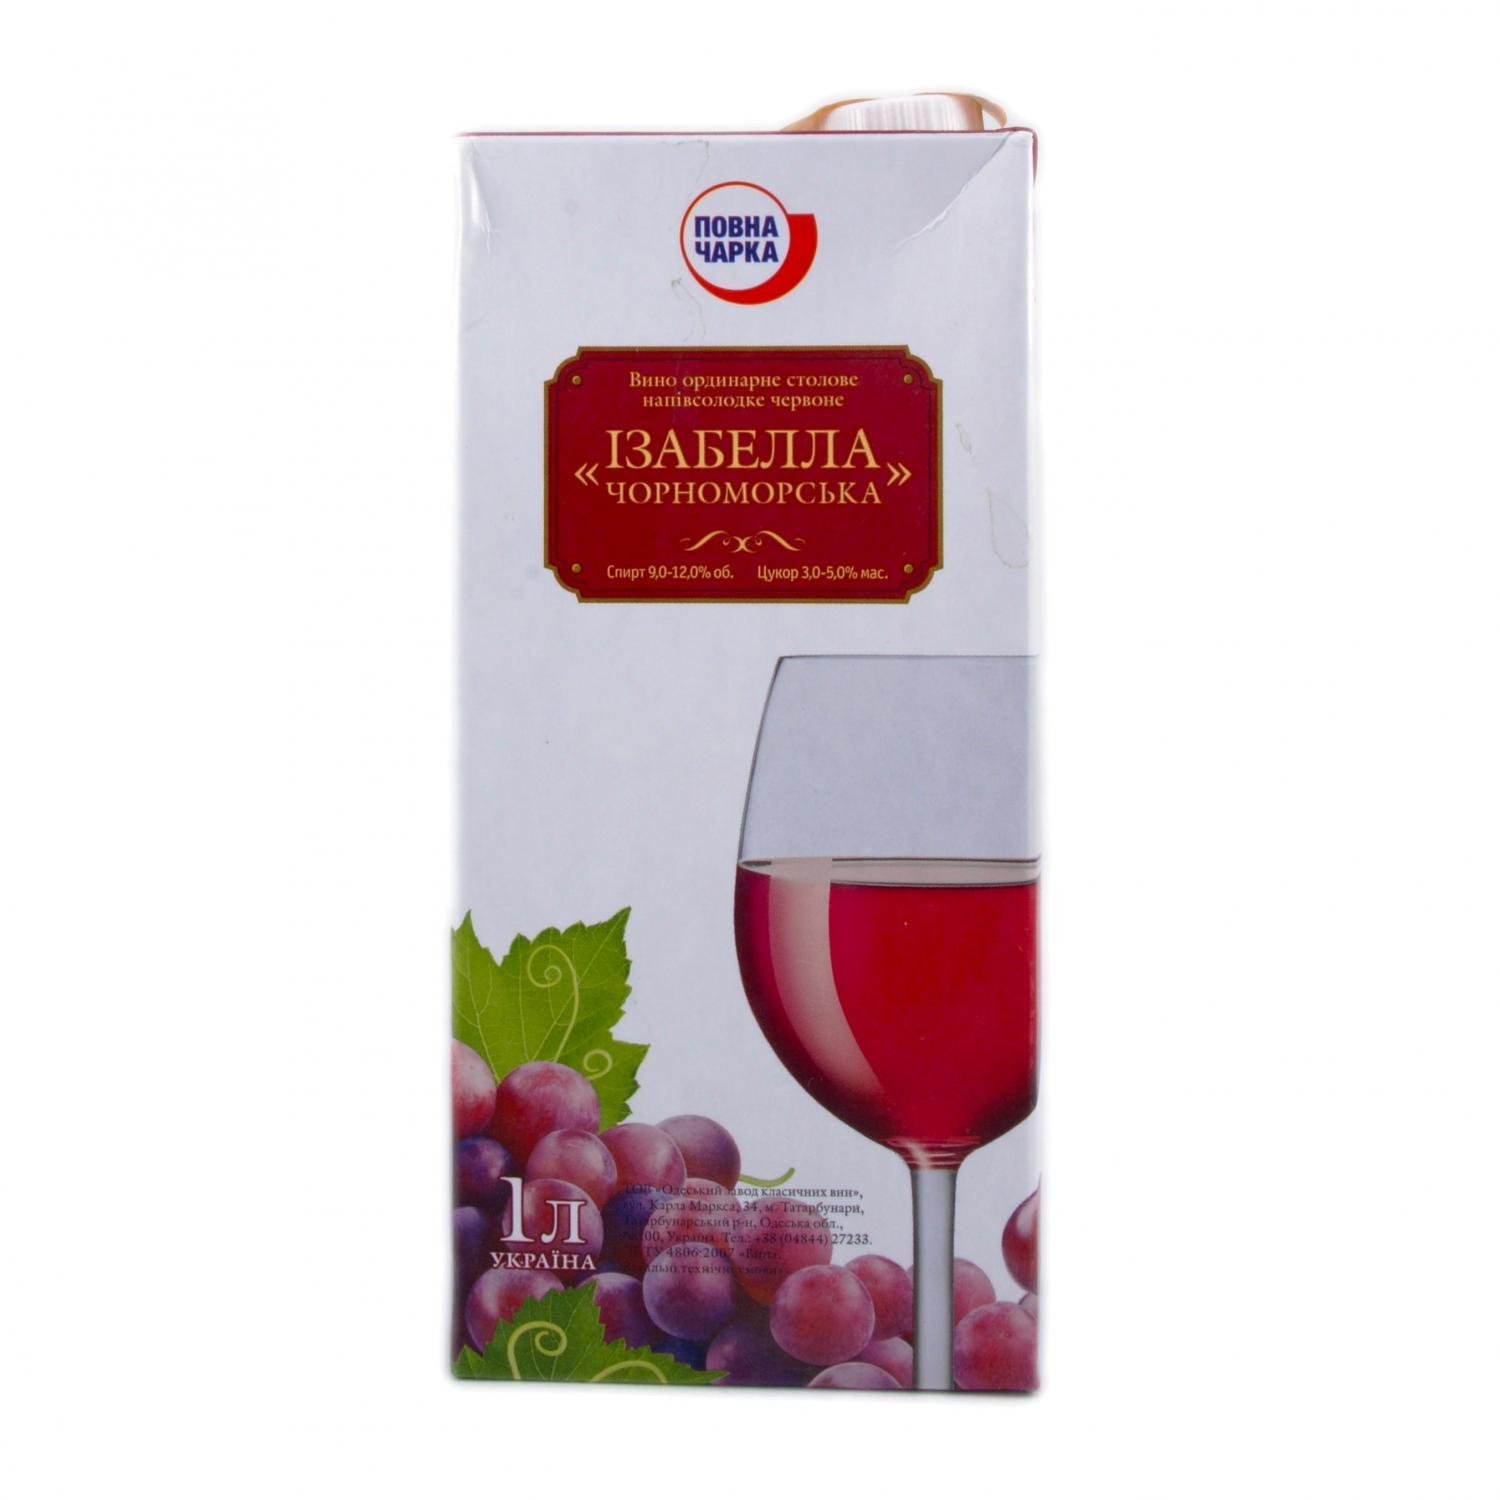 Вино Повна Чарка Изабелла Черноморская, красное полусладкое, 9-12%, 1 л (593292) - фото 1